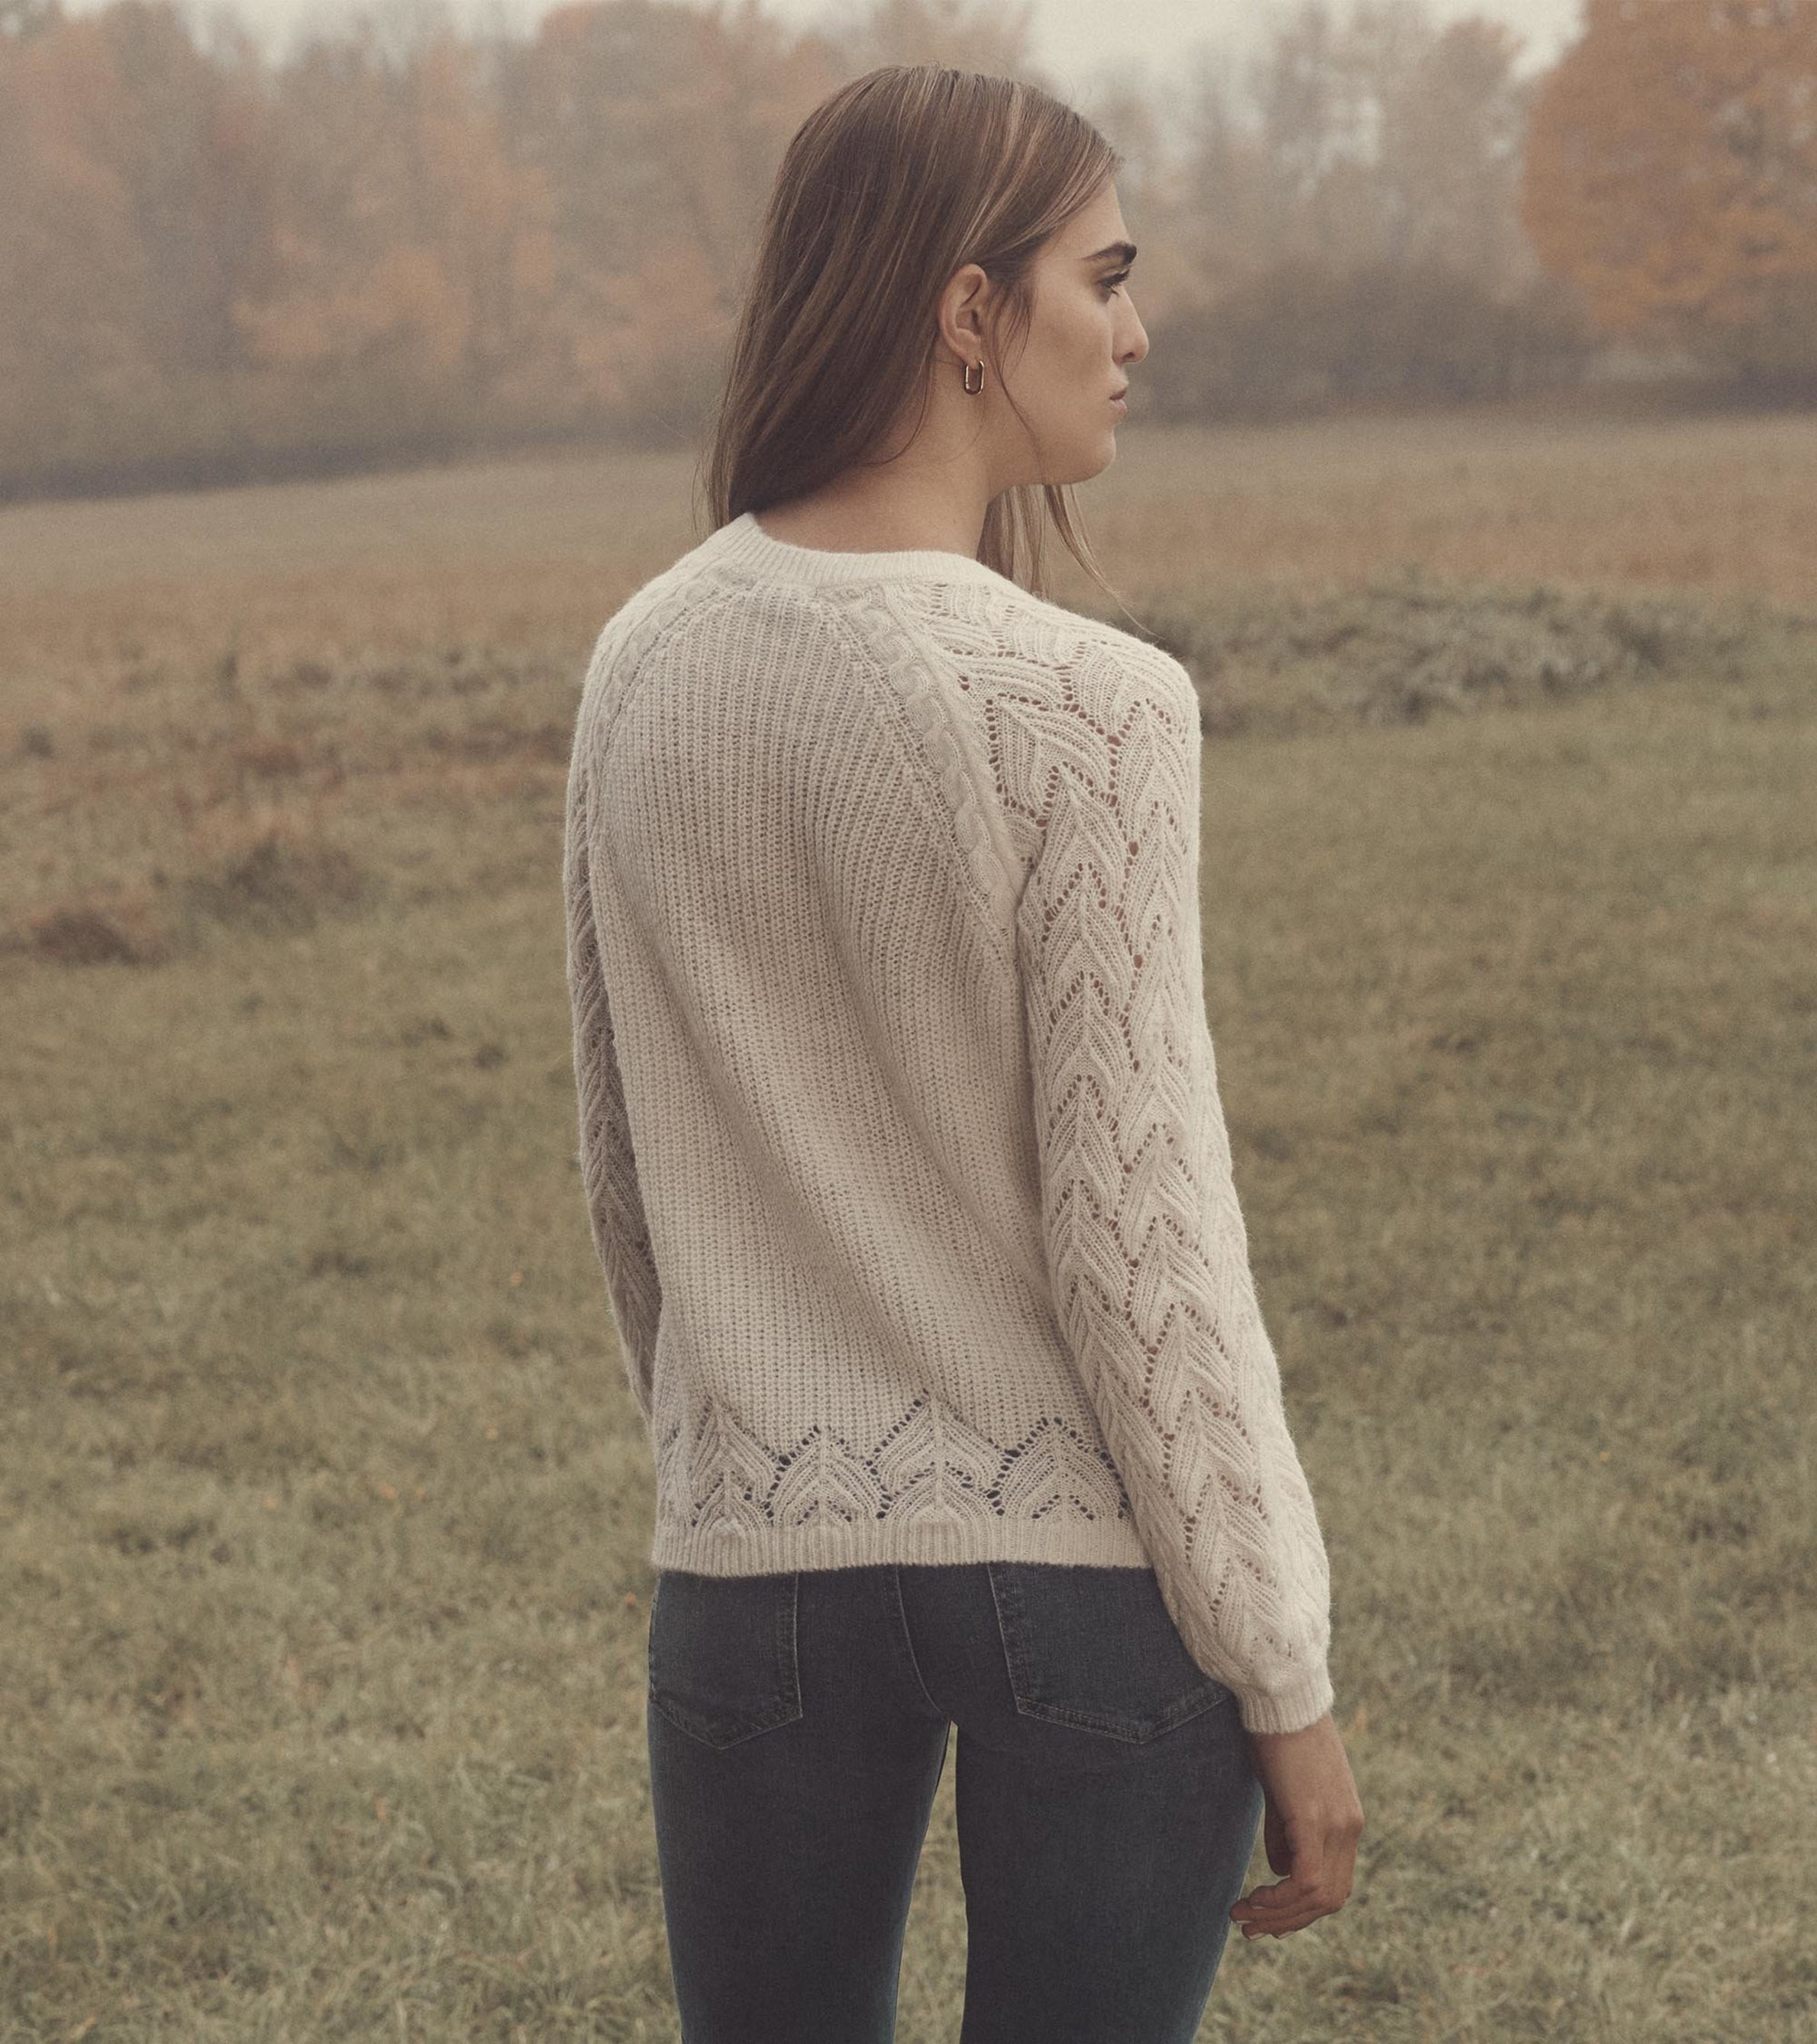 Floral Pattern Pointelle Knit Raglan Sleeve Sweater - Women's